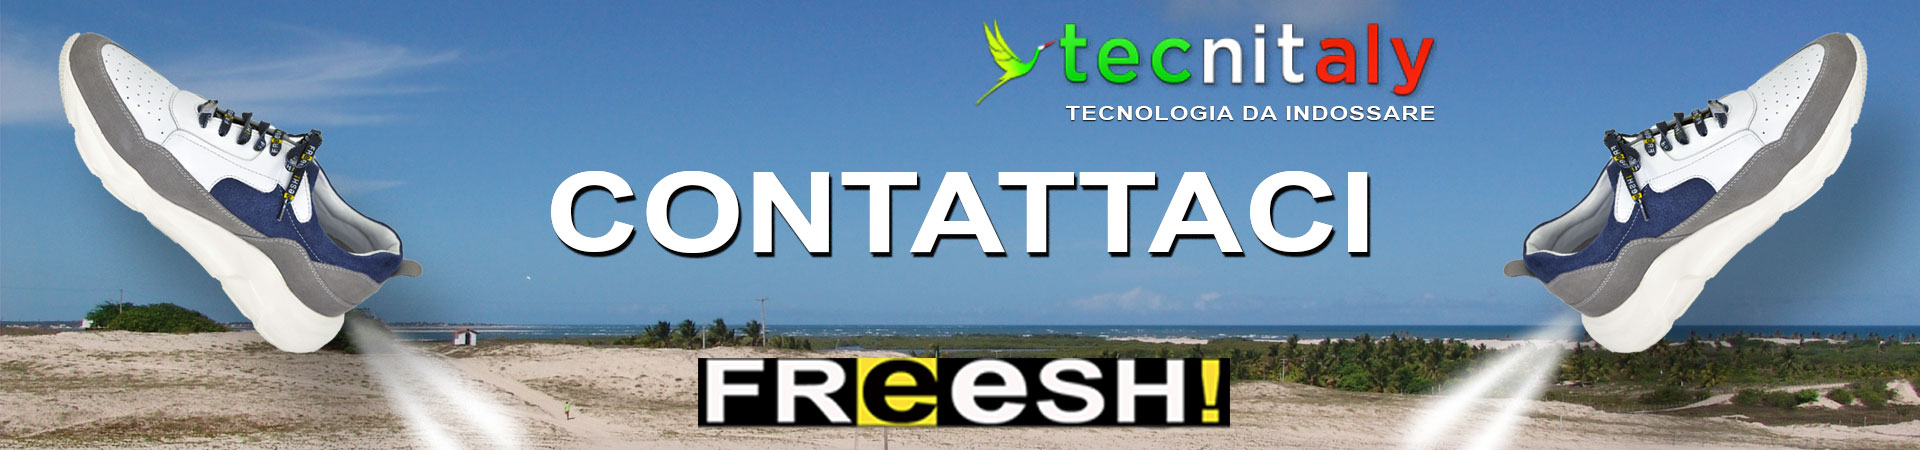 contatti-freesh!-tecnitaly